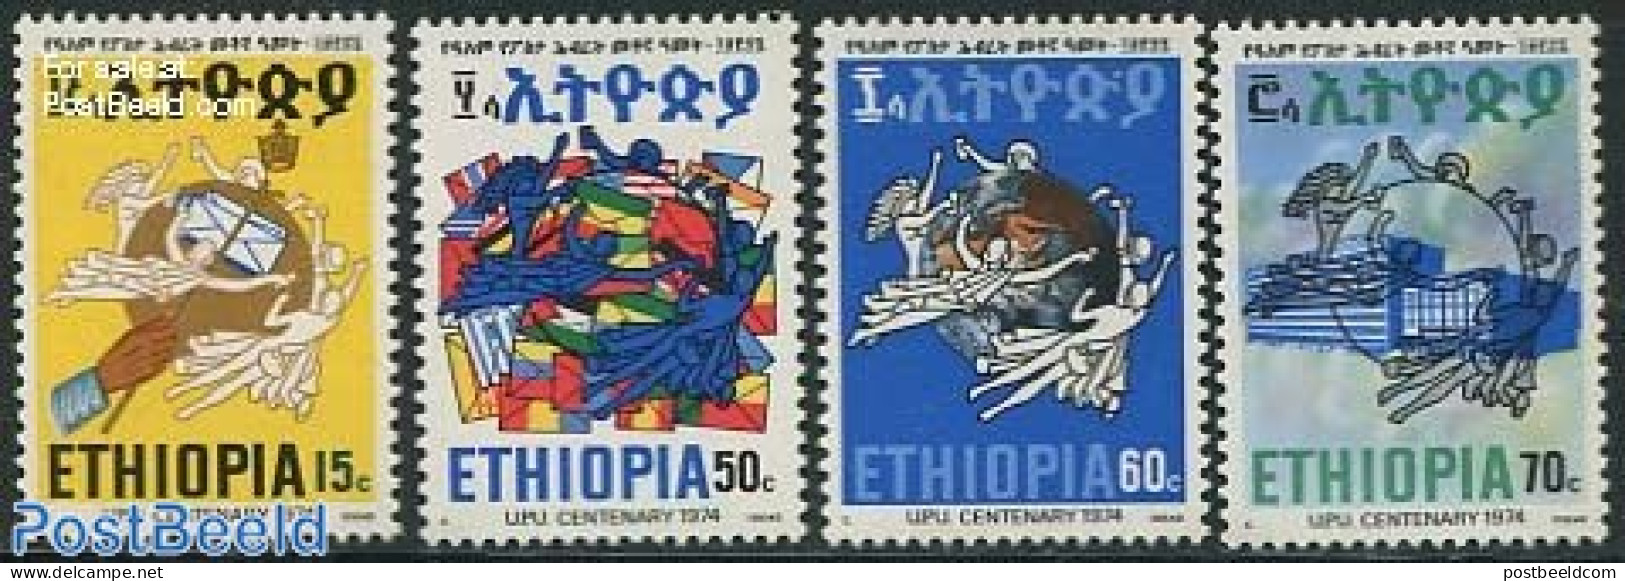 Ethiopia 1974 UPU Centenary 4v, Mint NH, U.P.U. - U.P.U.